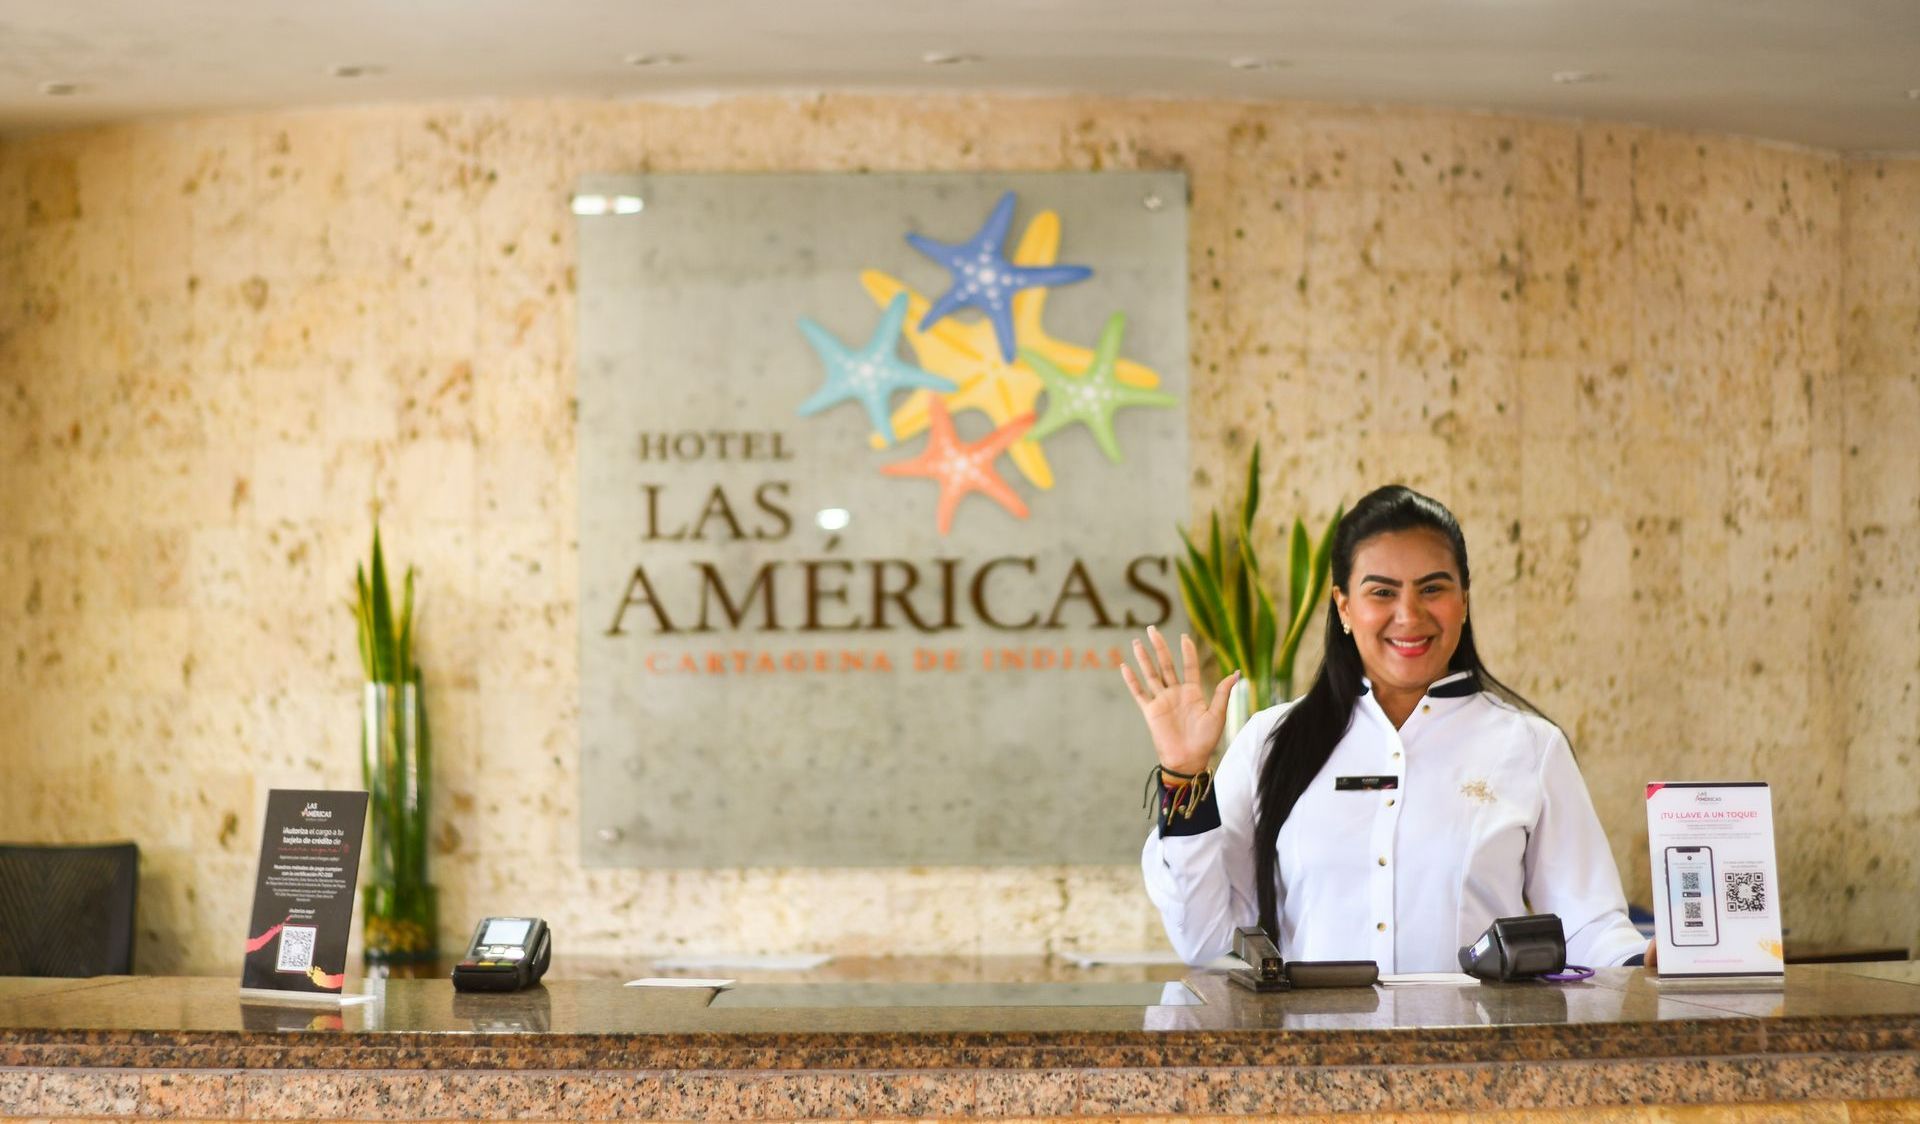 Centro internacional de convenciones Las Américas - Cartagena de indias - Colombia - Las Américas Hotels Group